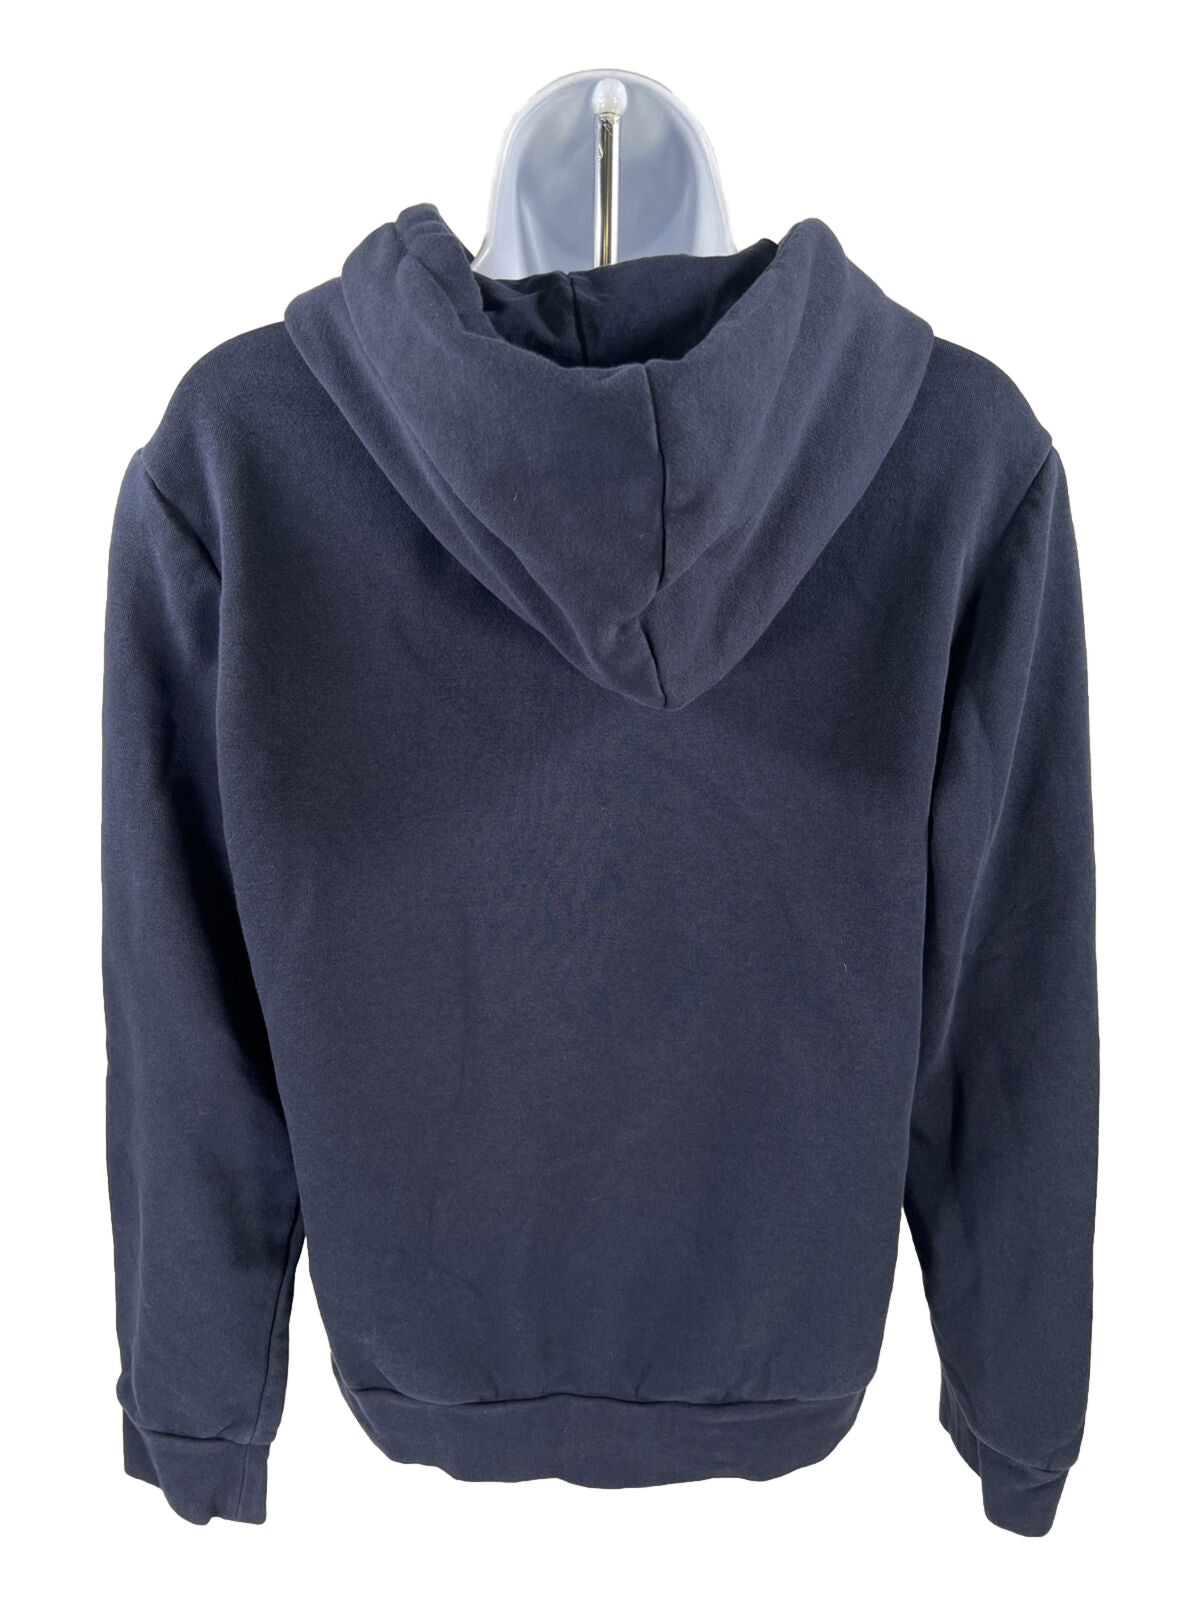 Sudadera con capucha y forro polar con logo gráfico en azul marino de Adidas para mujer - M